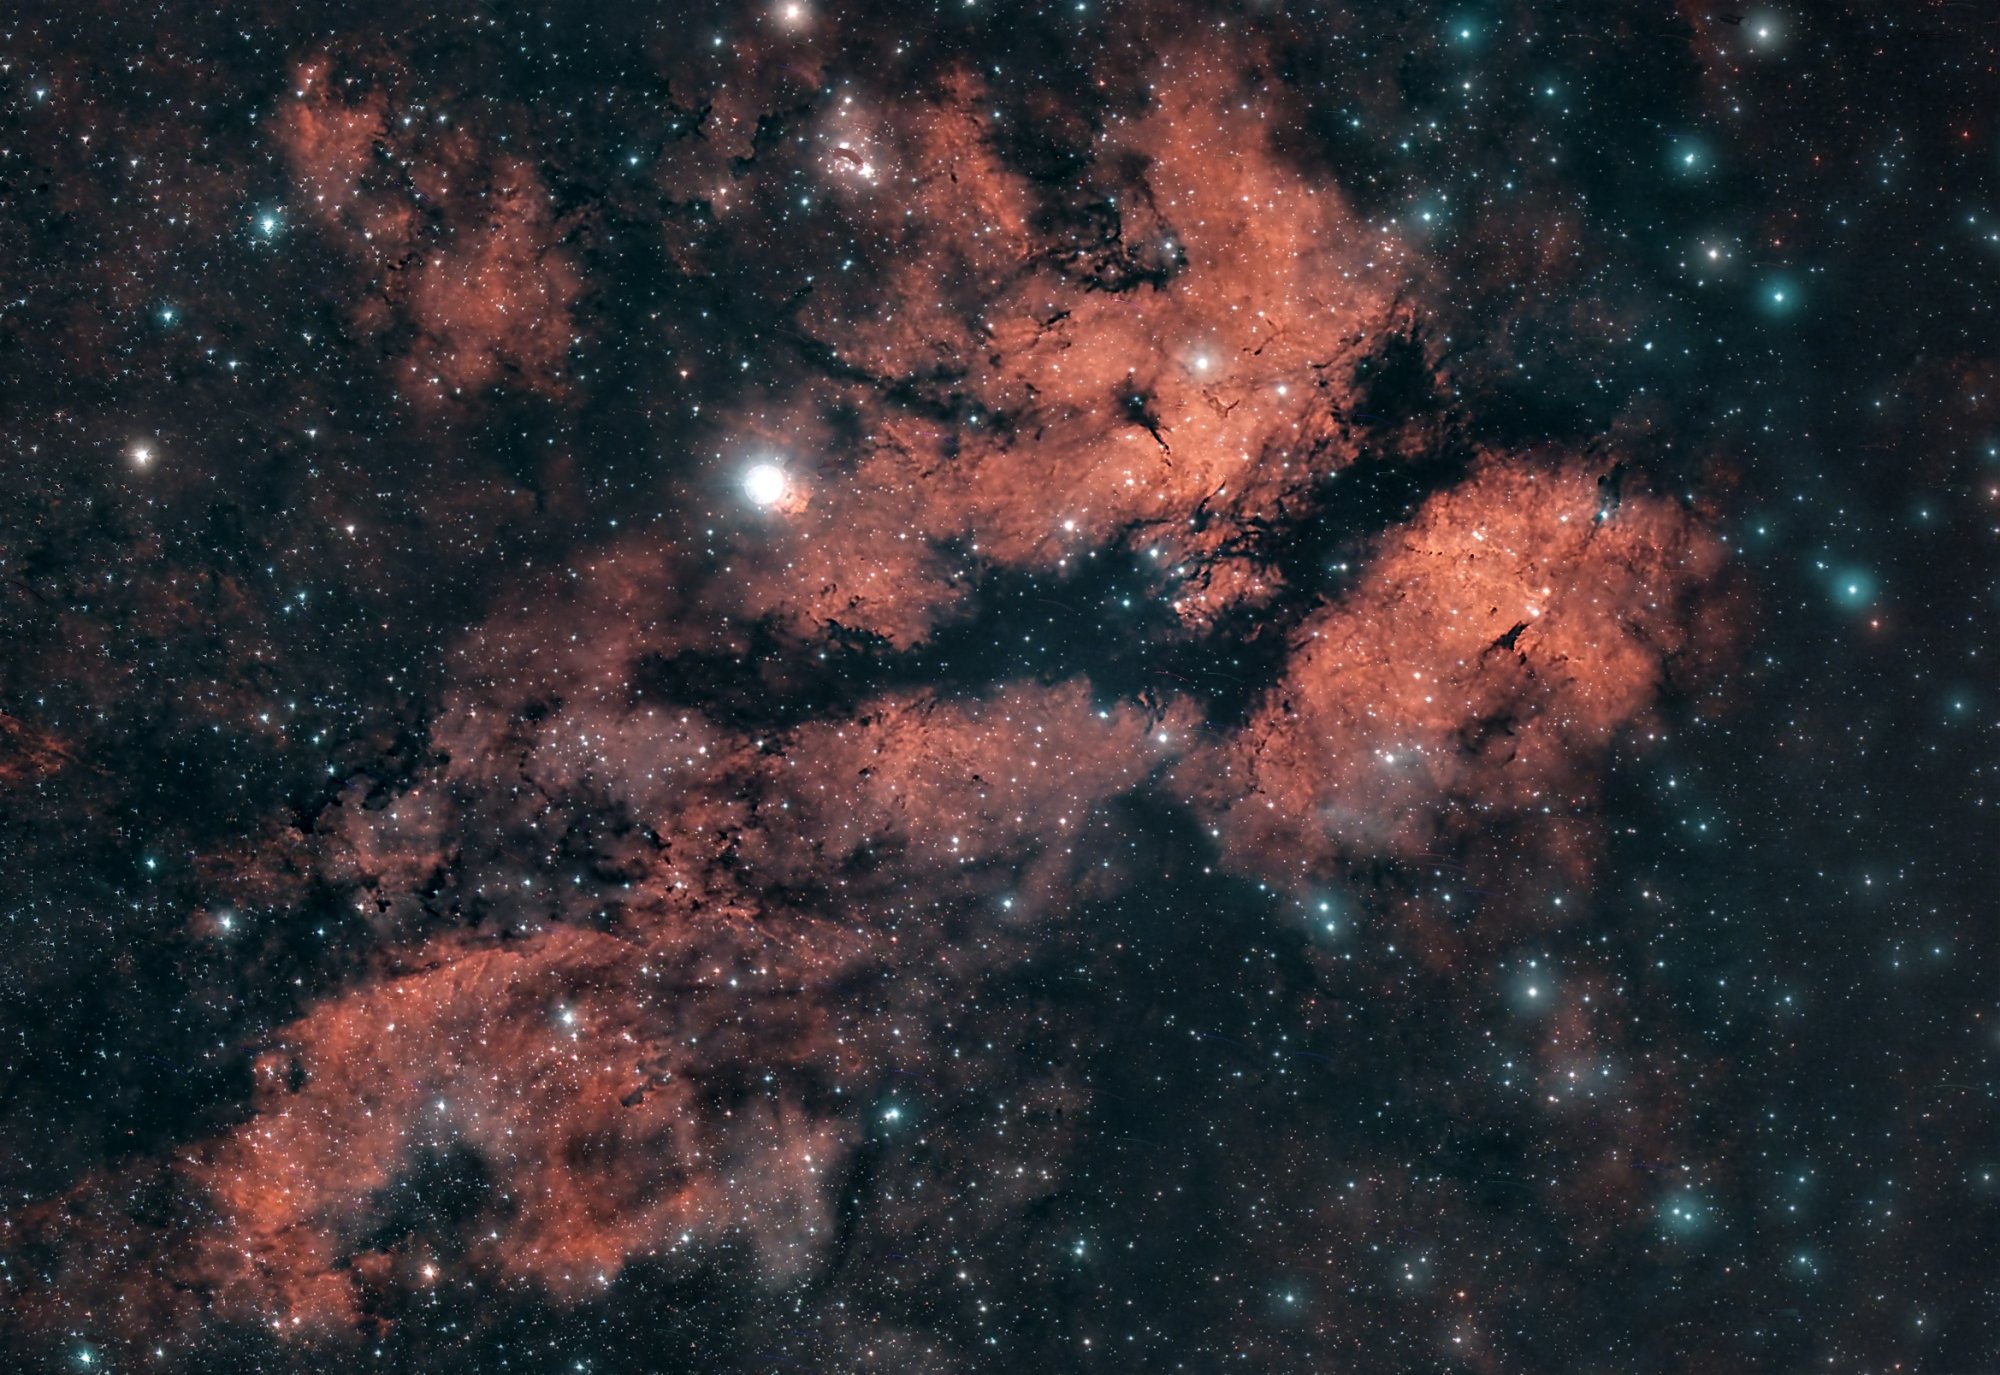 IC1318-W